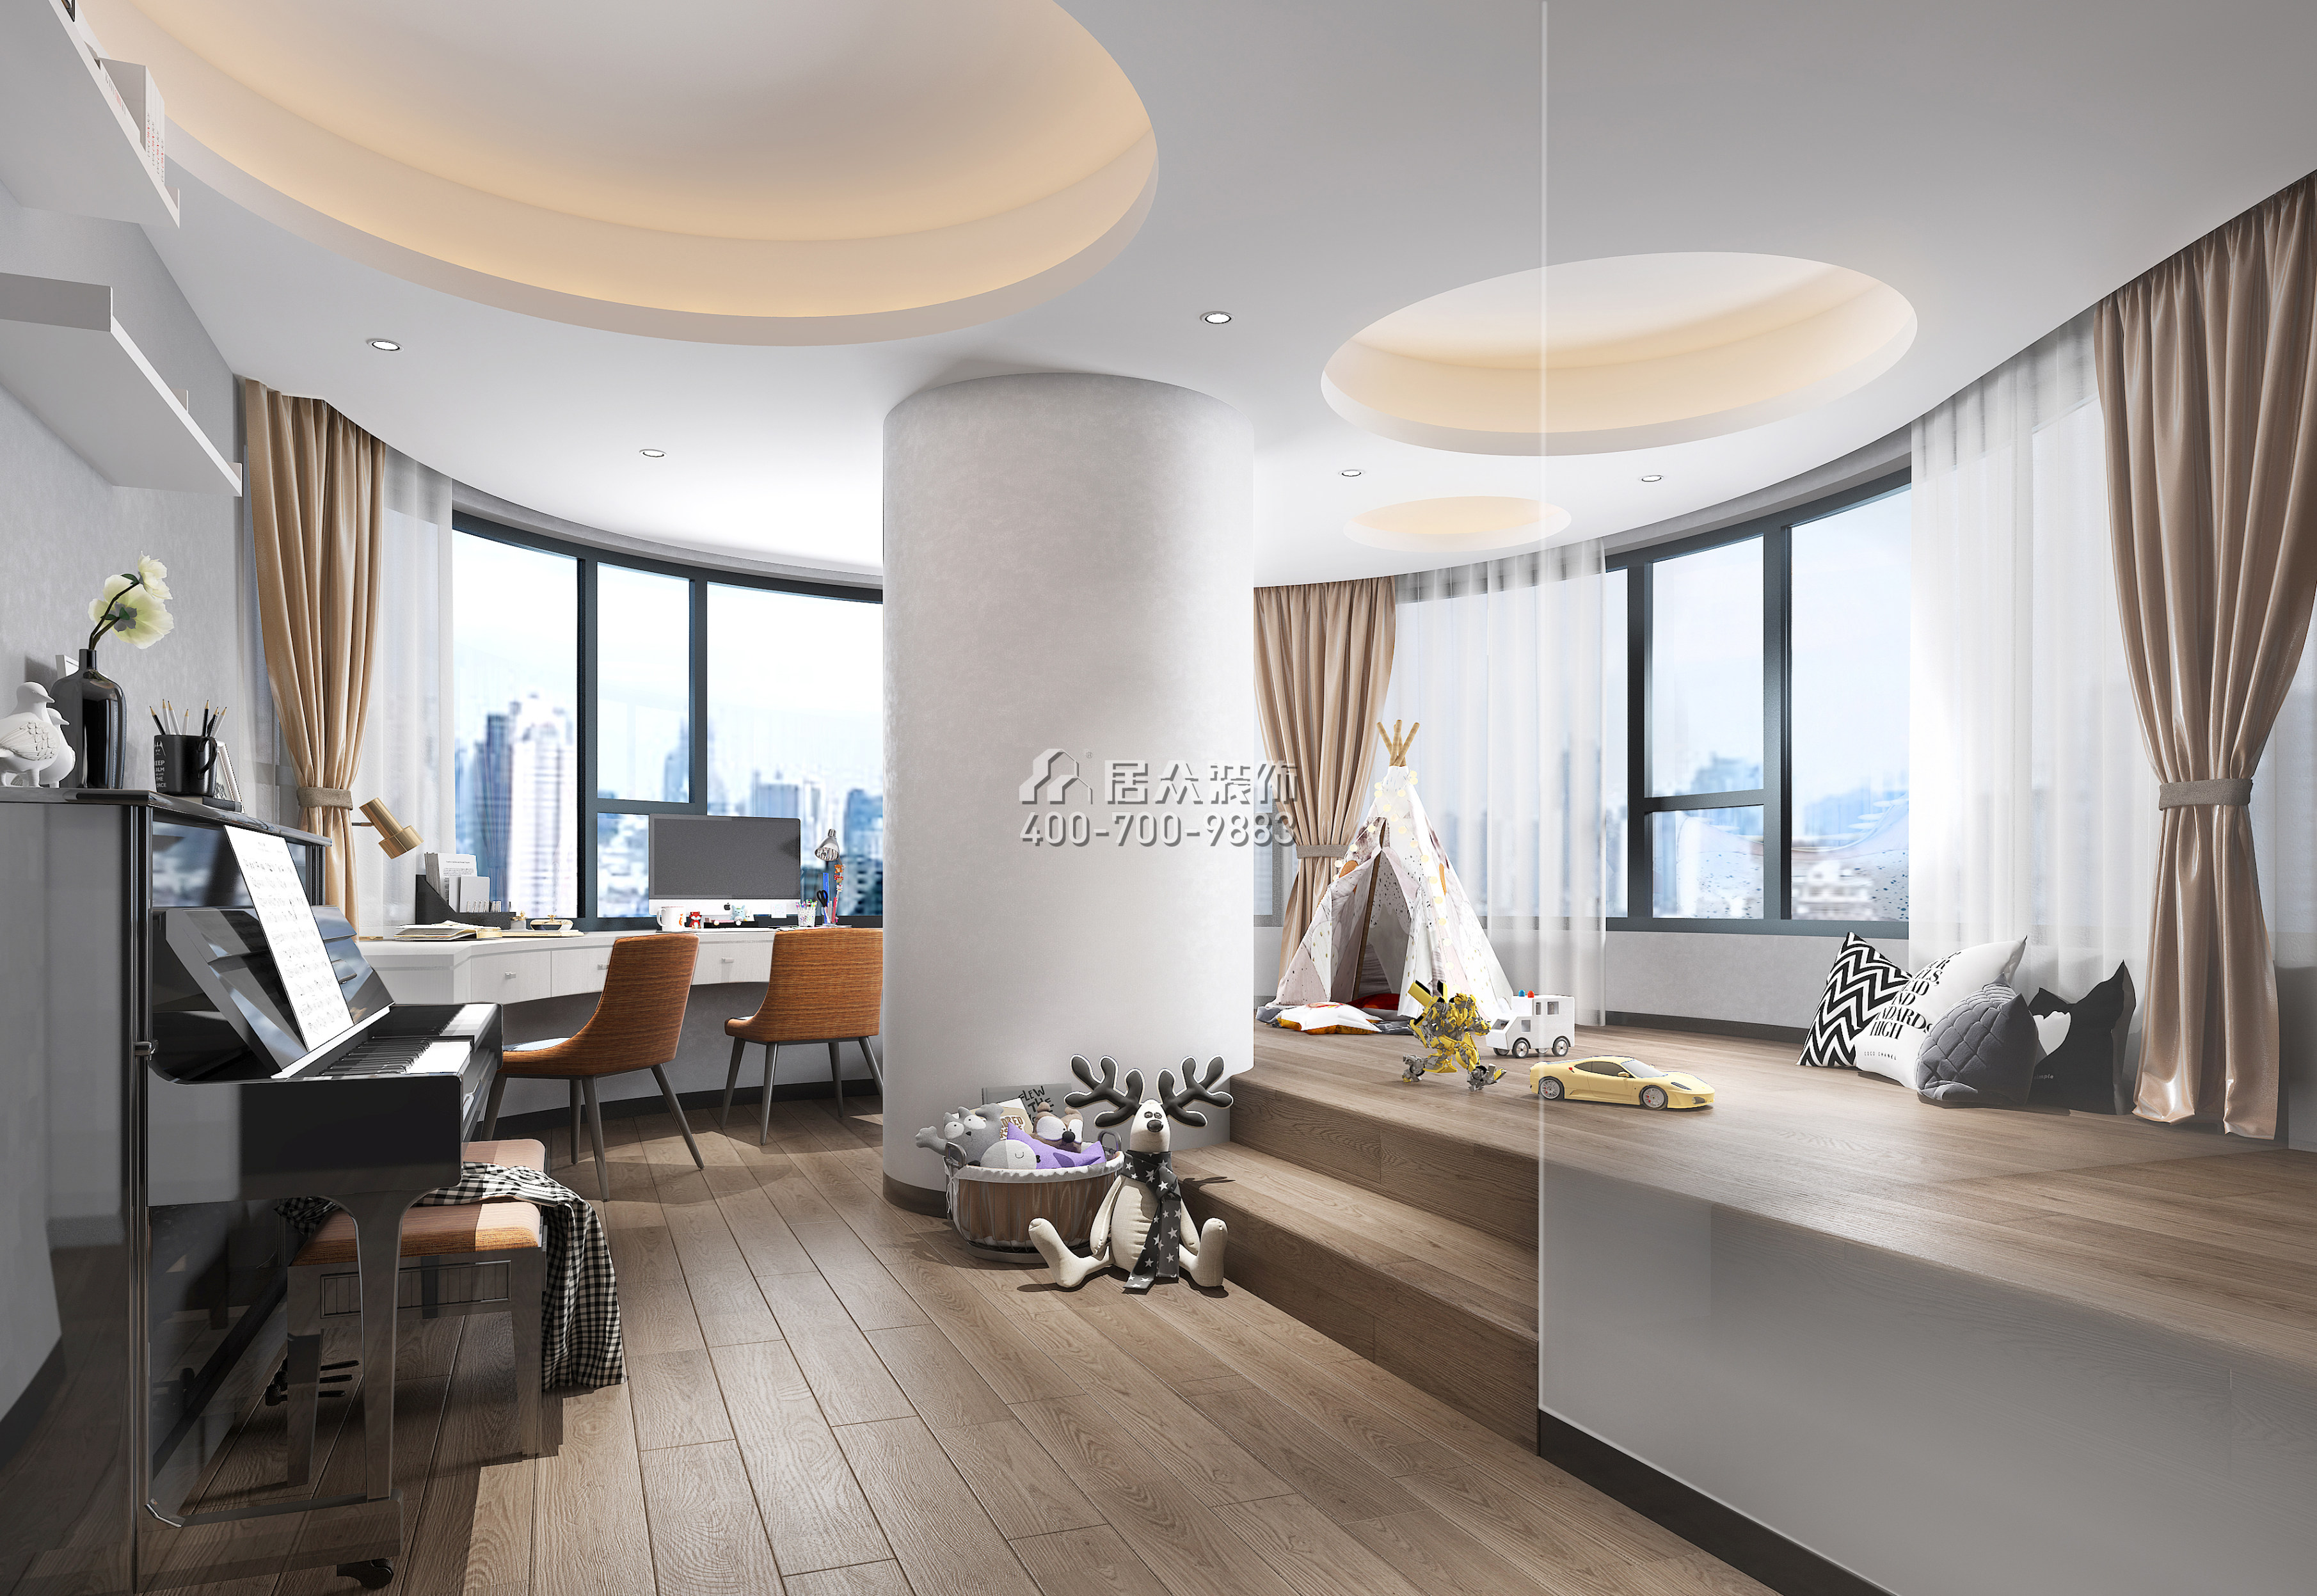 中信紅樹灣-三期300平方米現代簡約風格平層戶型客廳裝修效果圖